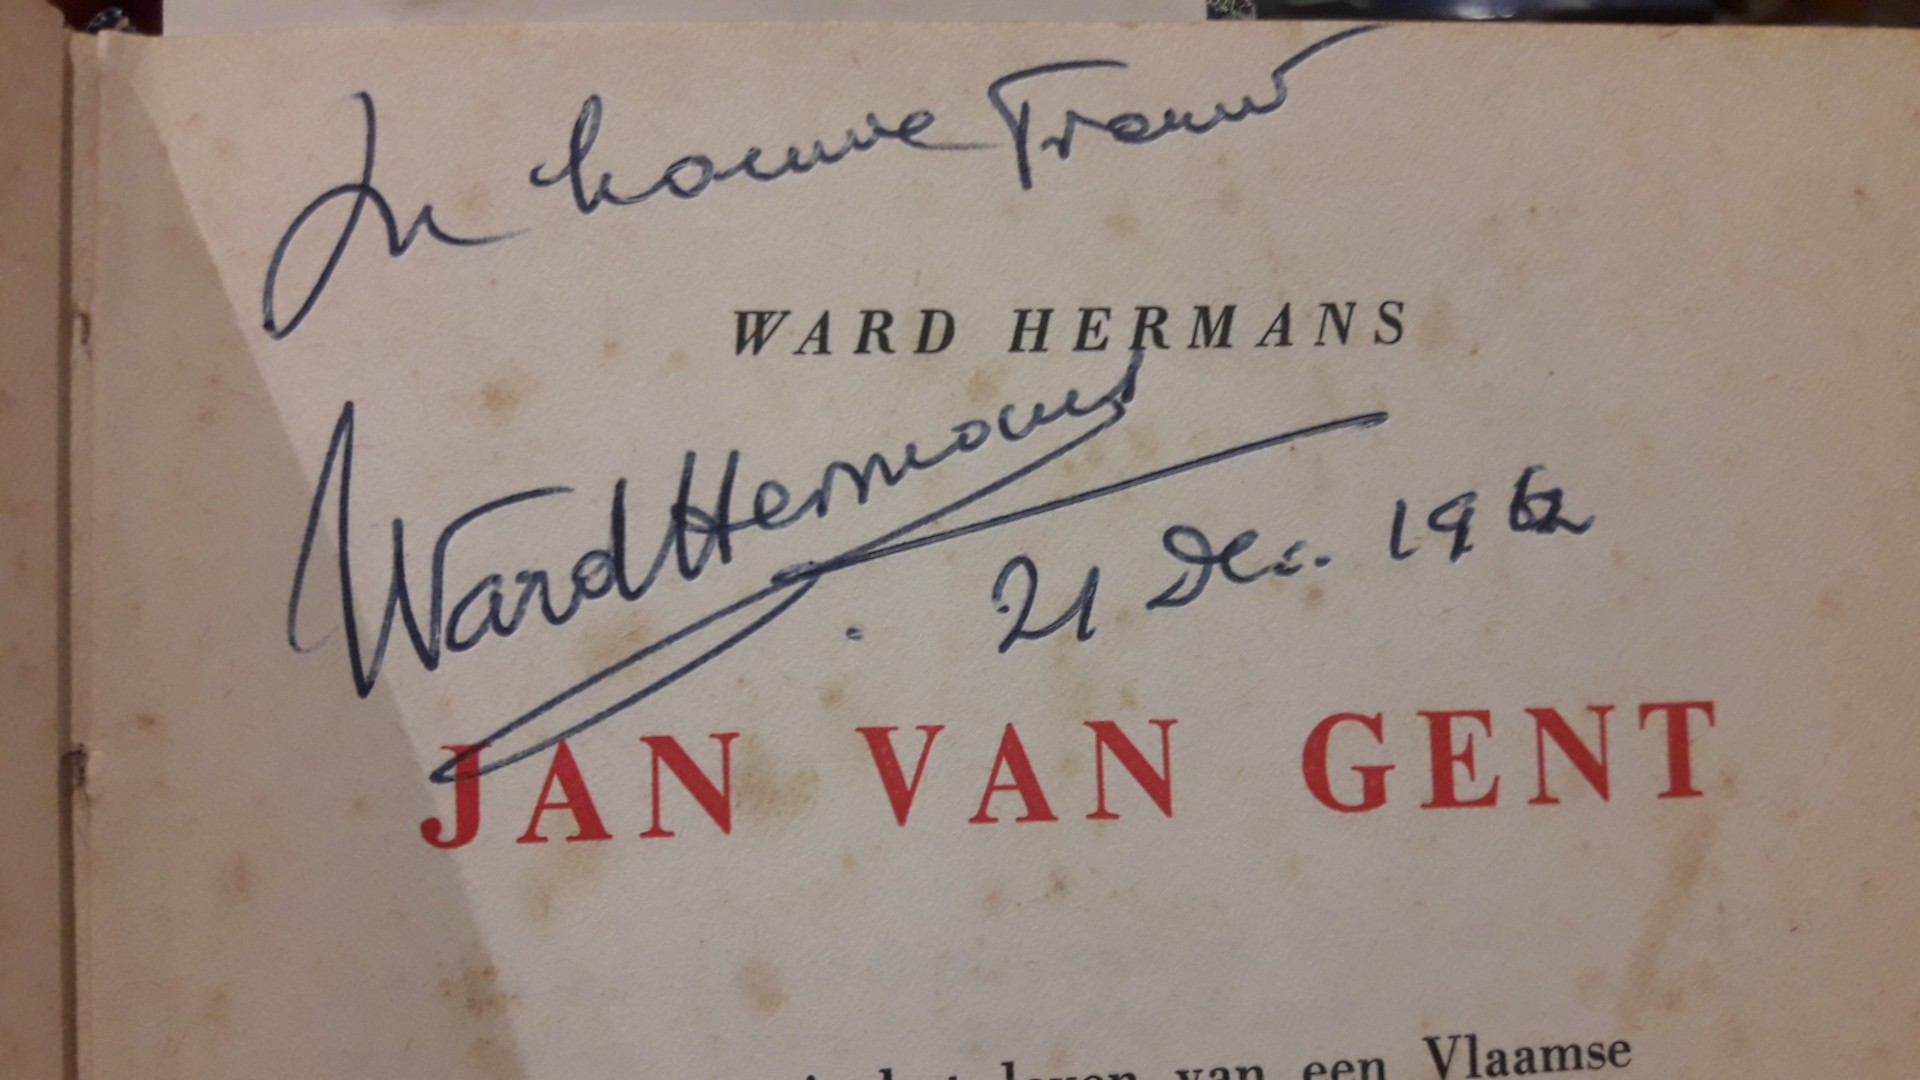 Jan Van Gent door Ward Hermans / 1962 - 326 bz met opdracht en handtekening